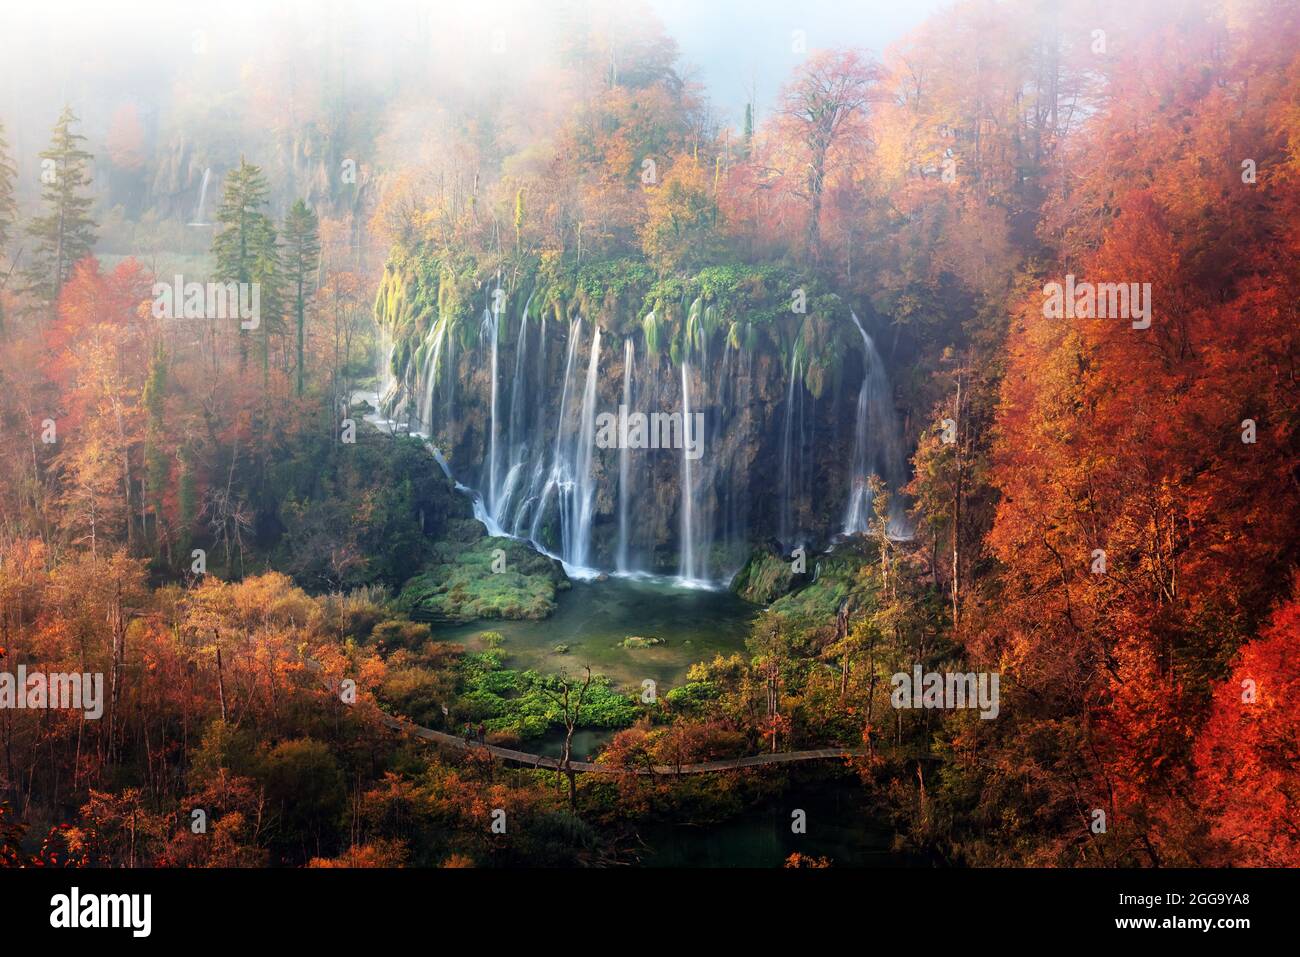 Incredibile vista sulla cascata delle nebbia nei laghi di Plitvice. Arancio autunno foresta sullo sfondo. Parco Nazionale di Plitvice, Croazia. Fotografia di paesaggio Foto Stock